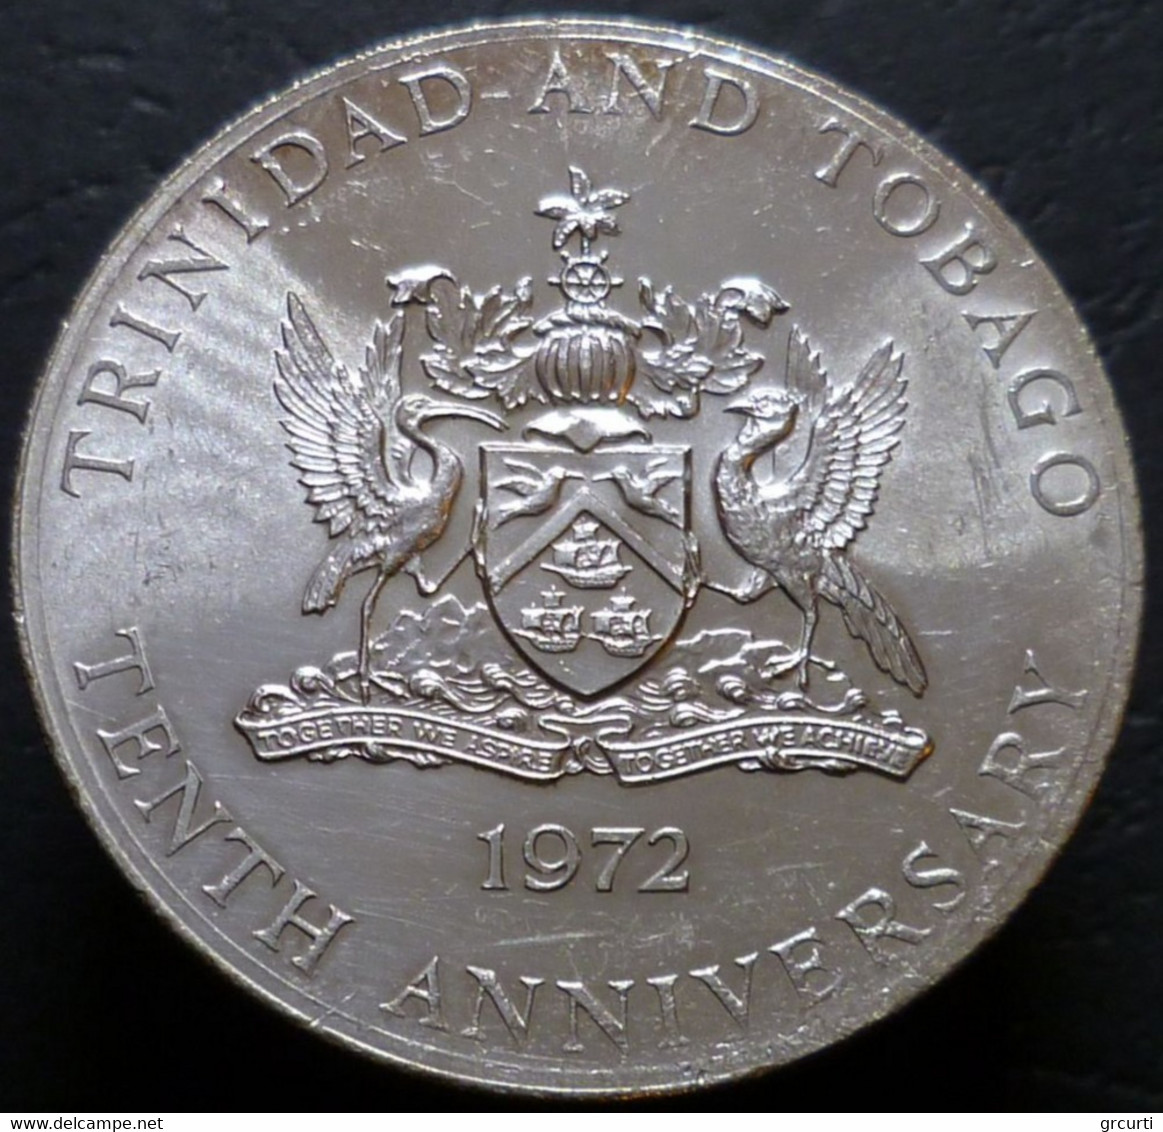 Trinidad & Tobago - 5 Dollars 1972 - KM# 15 - Trinidad & Tobago